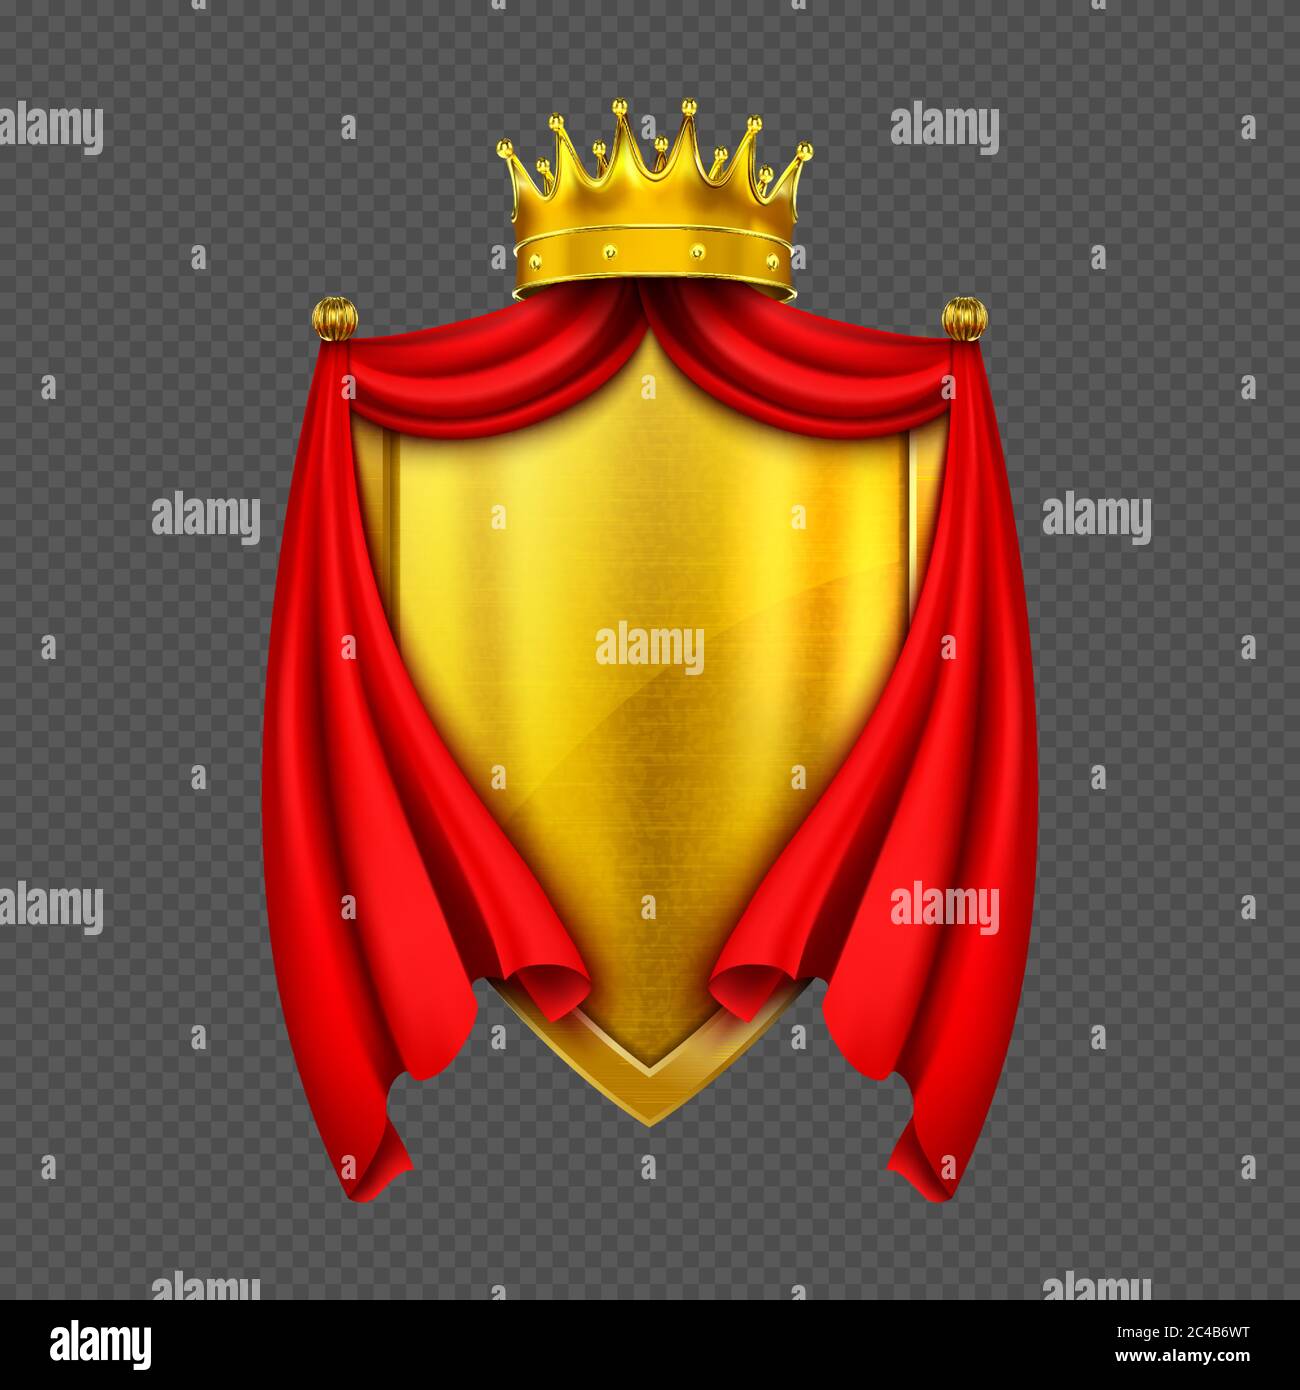 Stemma con corona monarca dorata, scudo e tela rossa piegata o capo, emblema reale araldico isolato su sfondo trasparente. Simbolo imperatore del re d'oro medievale. Illustrazione vettoriale 3d realistica Illustrazione Vettoriale